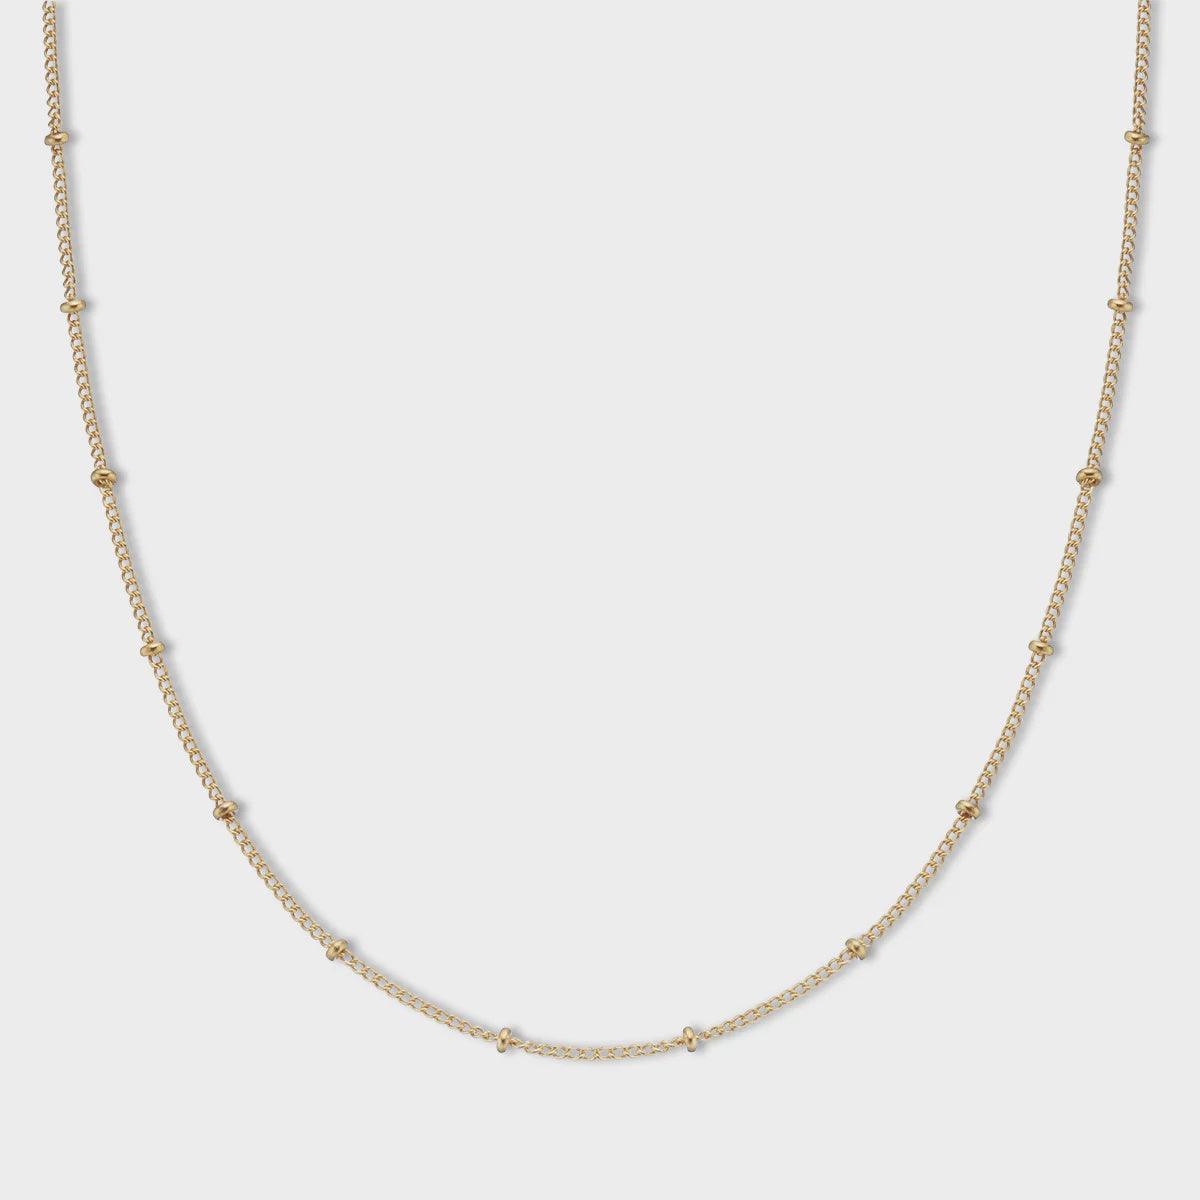 Soliel Chain Necklace - Adjustable 18k Gold Plated - Handworks Nouveau Paperie